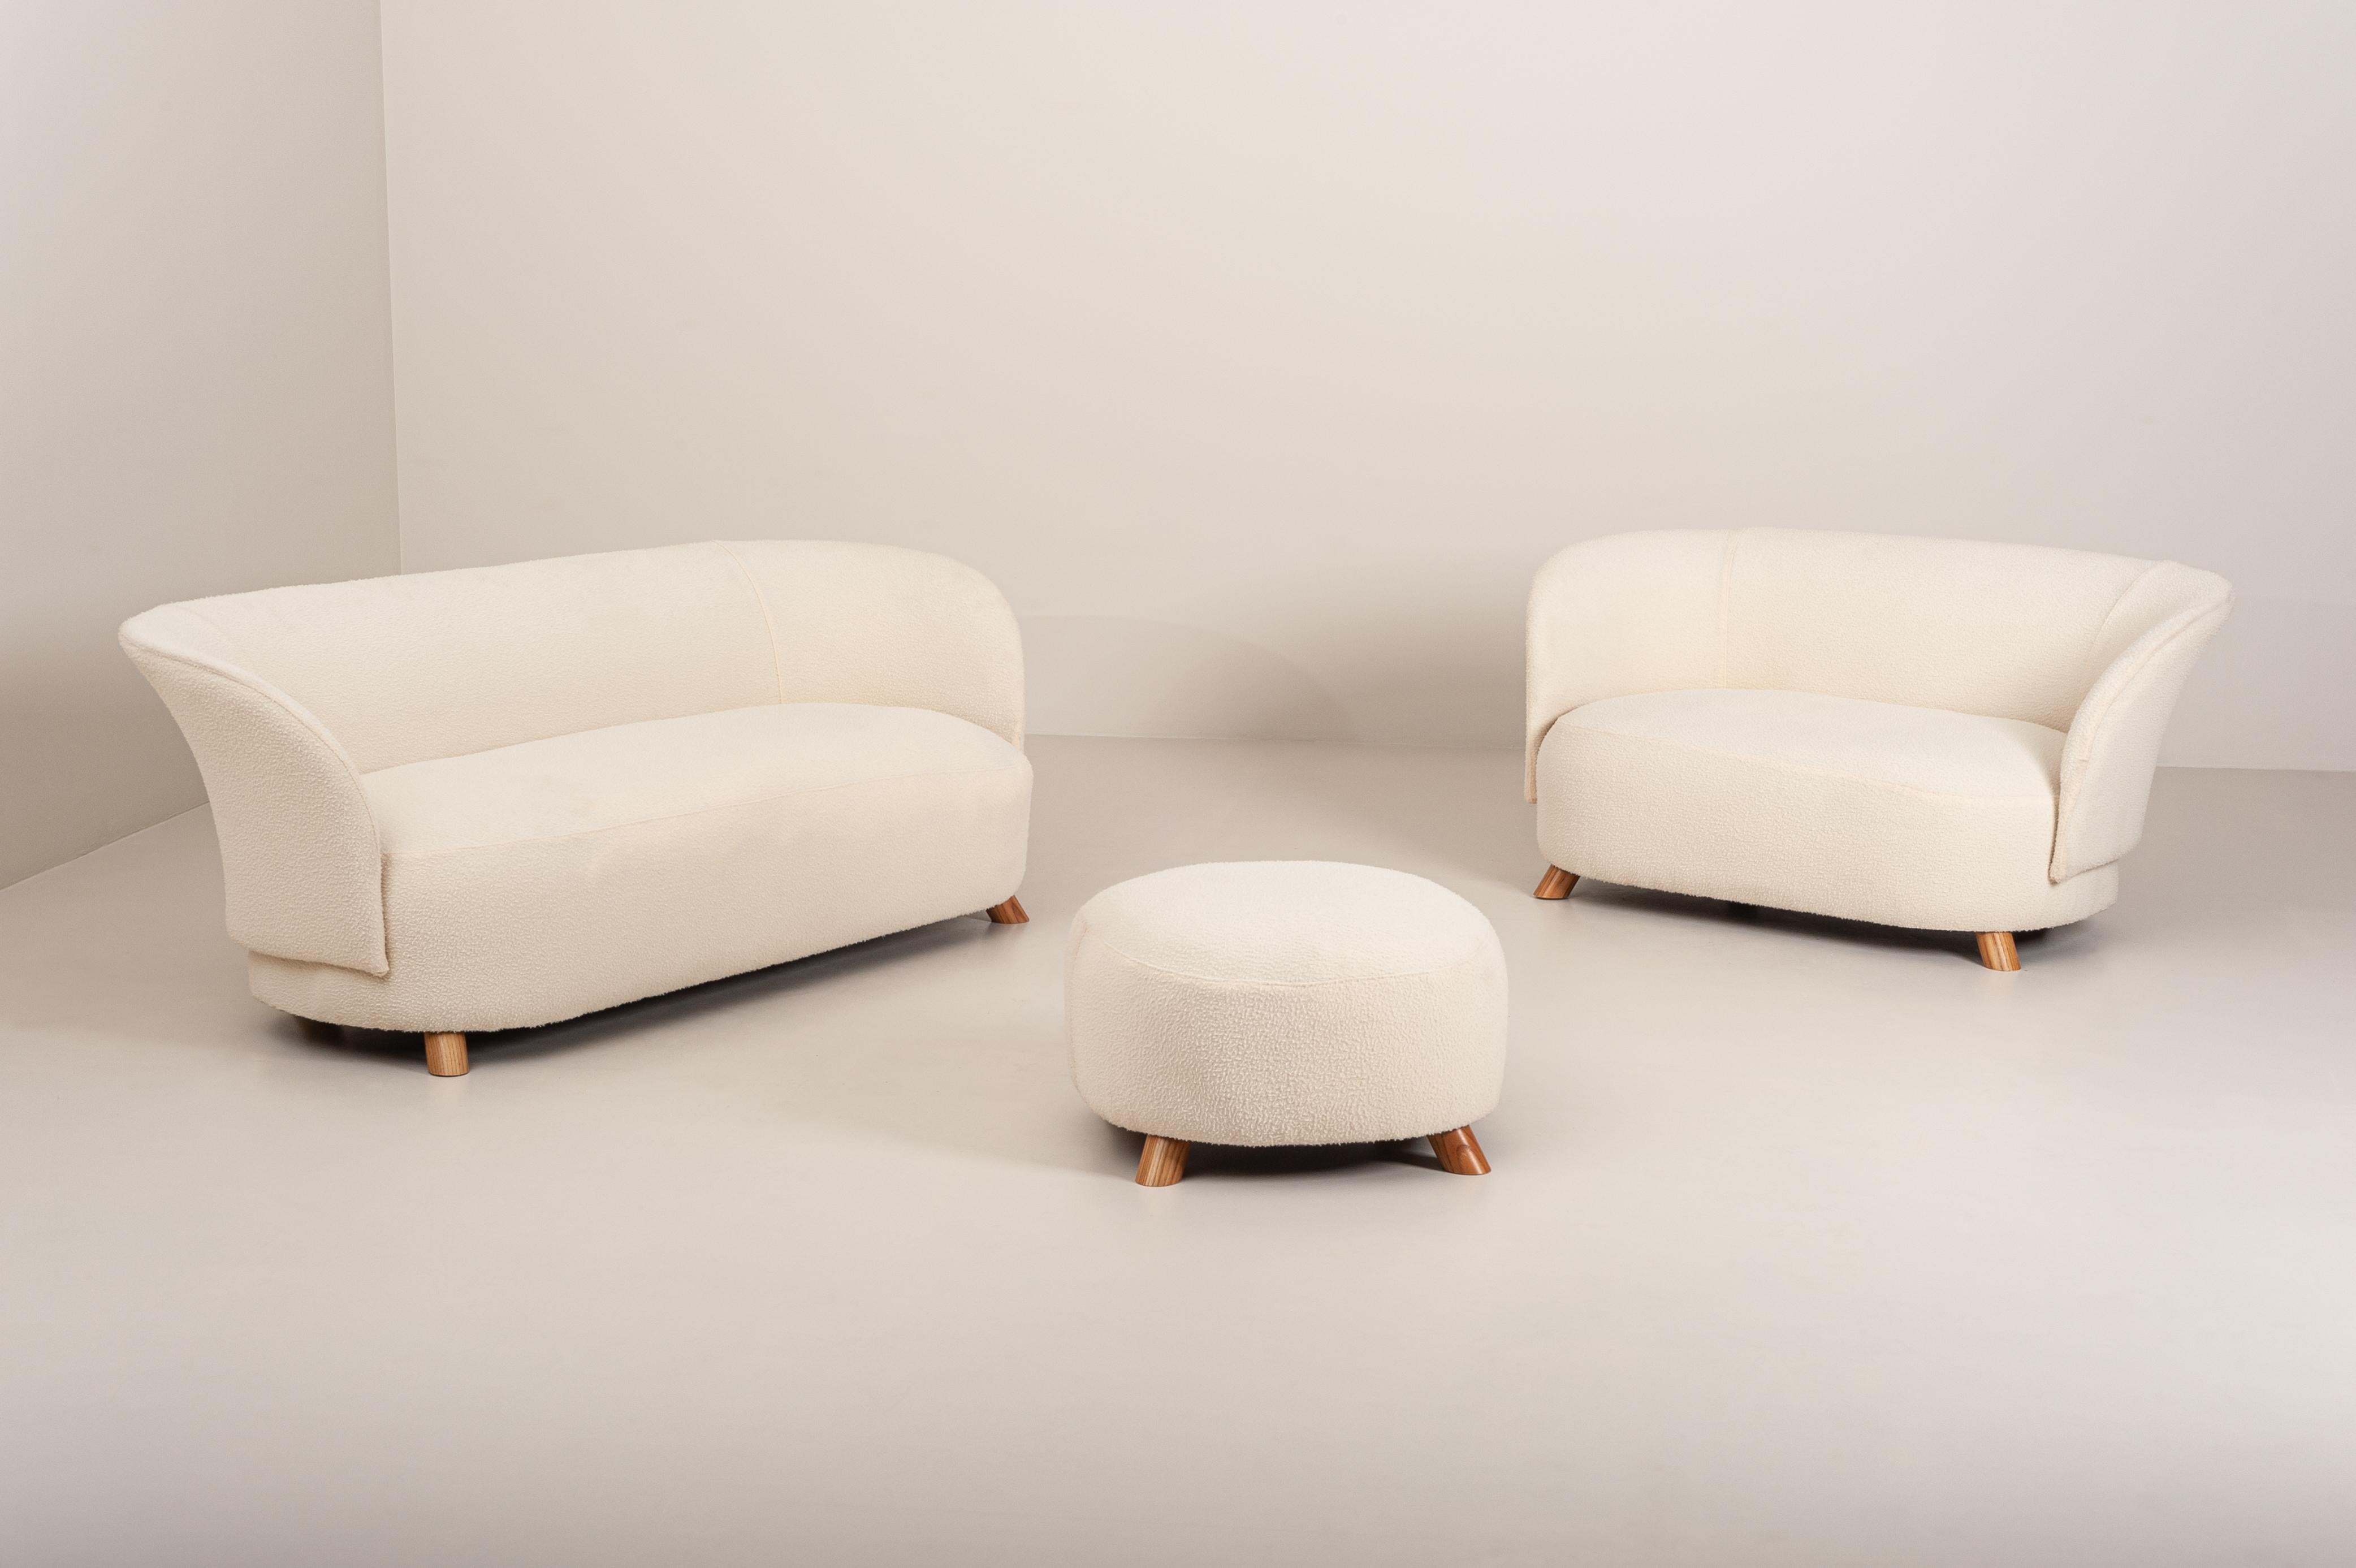 Dieses schöne und stilvolle Zweisitzer-Sofa ist Teil eines Wohnzimmersets, das aus einem Dreisitzer-Sofa und einem großen Hocker besteht. Es wurde in den 1940er Jahren in Dänemark entworfen und hergestellt. 
Er ist in ausgezeichnetem Zustand: